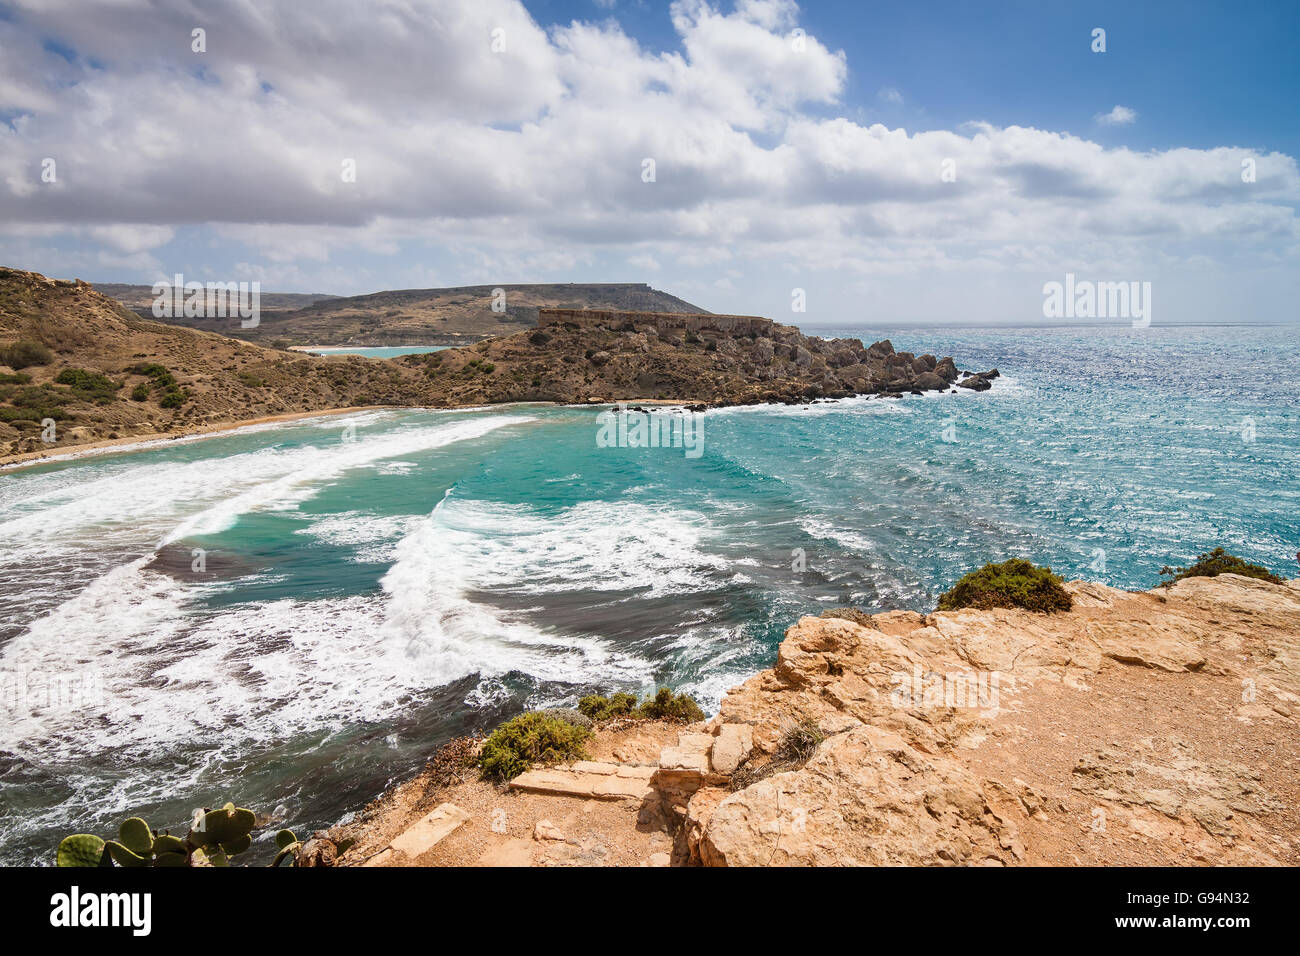 Rocky cliff in Siggiewi area on the Malta island, Mediterranean sea Stock Photo